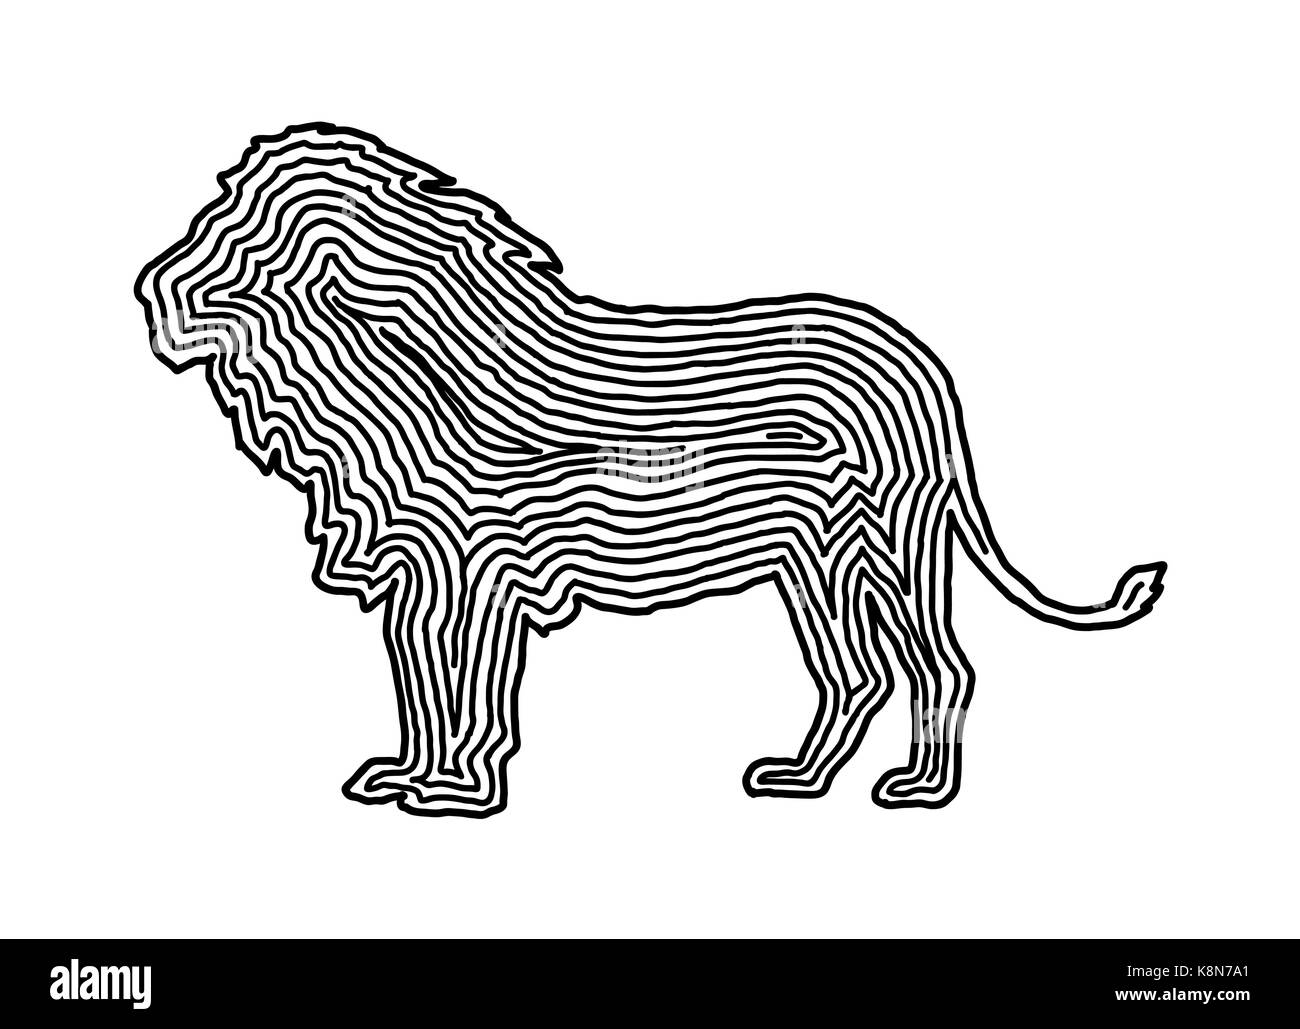 Ein Löwe Abbildung Symbol in schwarz abgesetzten Zeile. Fingerabdruck Stil für Logo oder Hintergrund Design. Stock Vektor